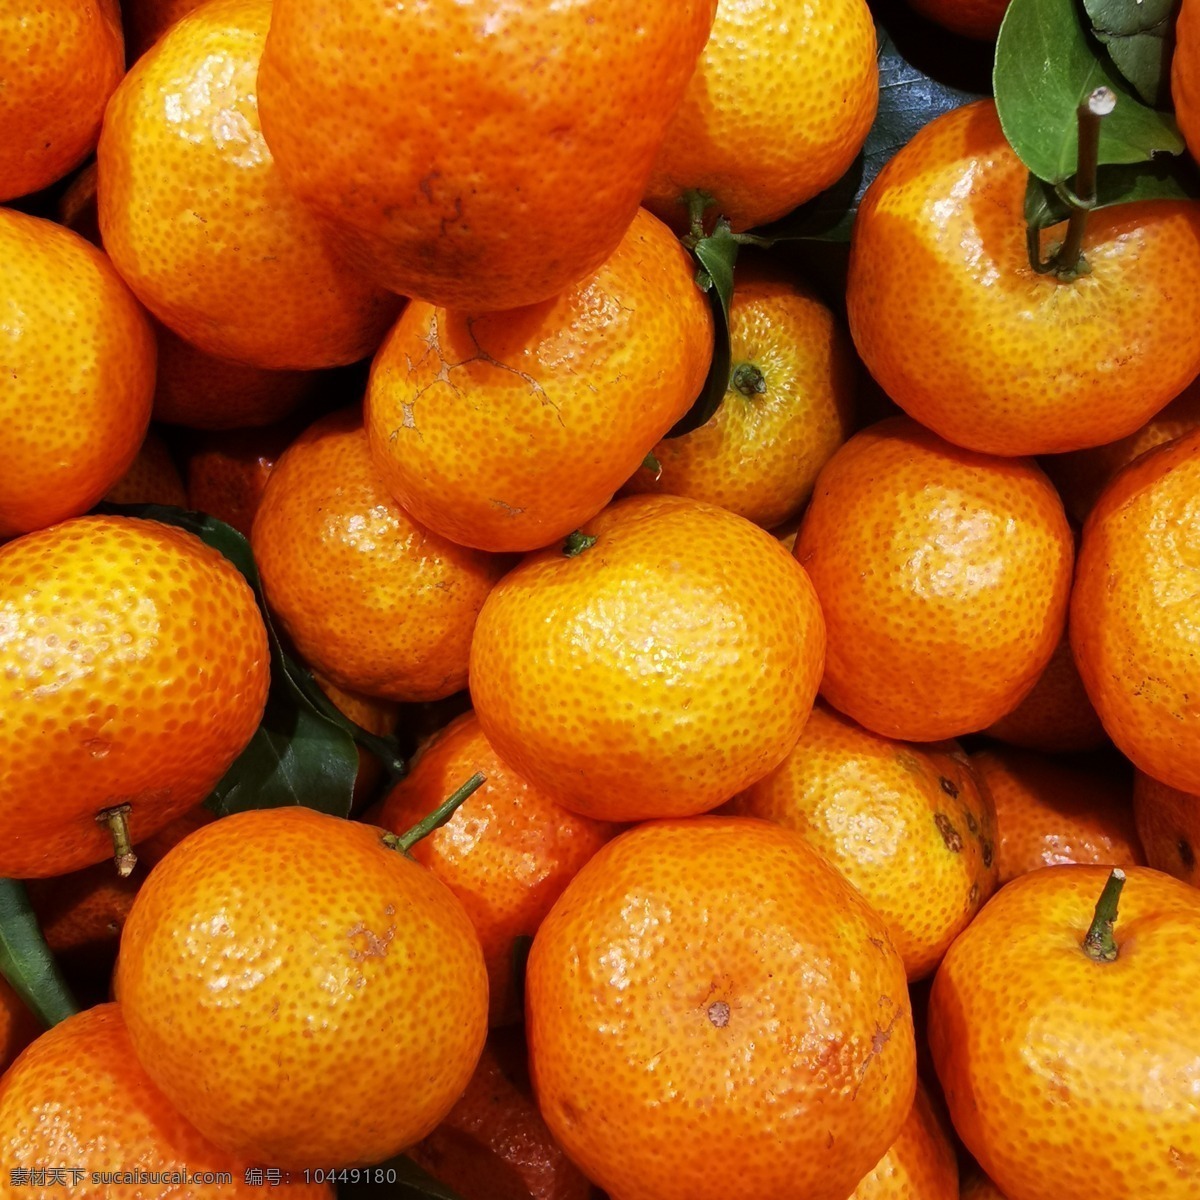 新鲜的沙糖桔 沙糖桔 柑橘 橘子 小橘子 超市水果 商超水果 水果店用图 商品用图 硕果累累 水果图片 新鲜水果 有机水果 绿色水果 水果用图 生鲜水果 素材图片下载 生物世界 水果